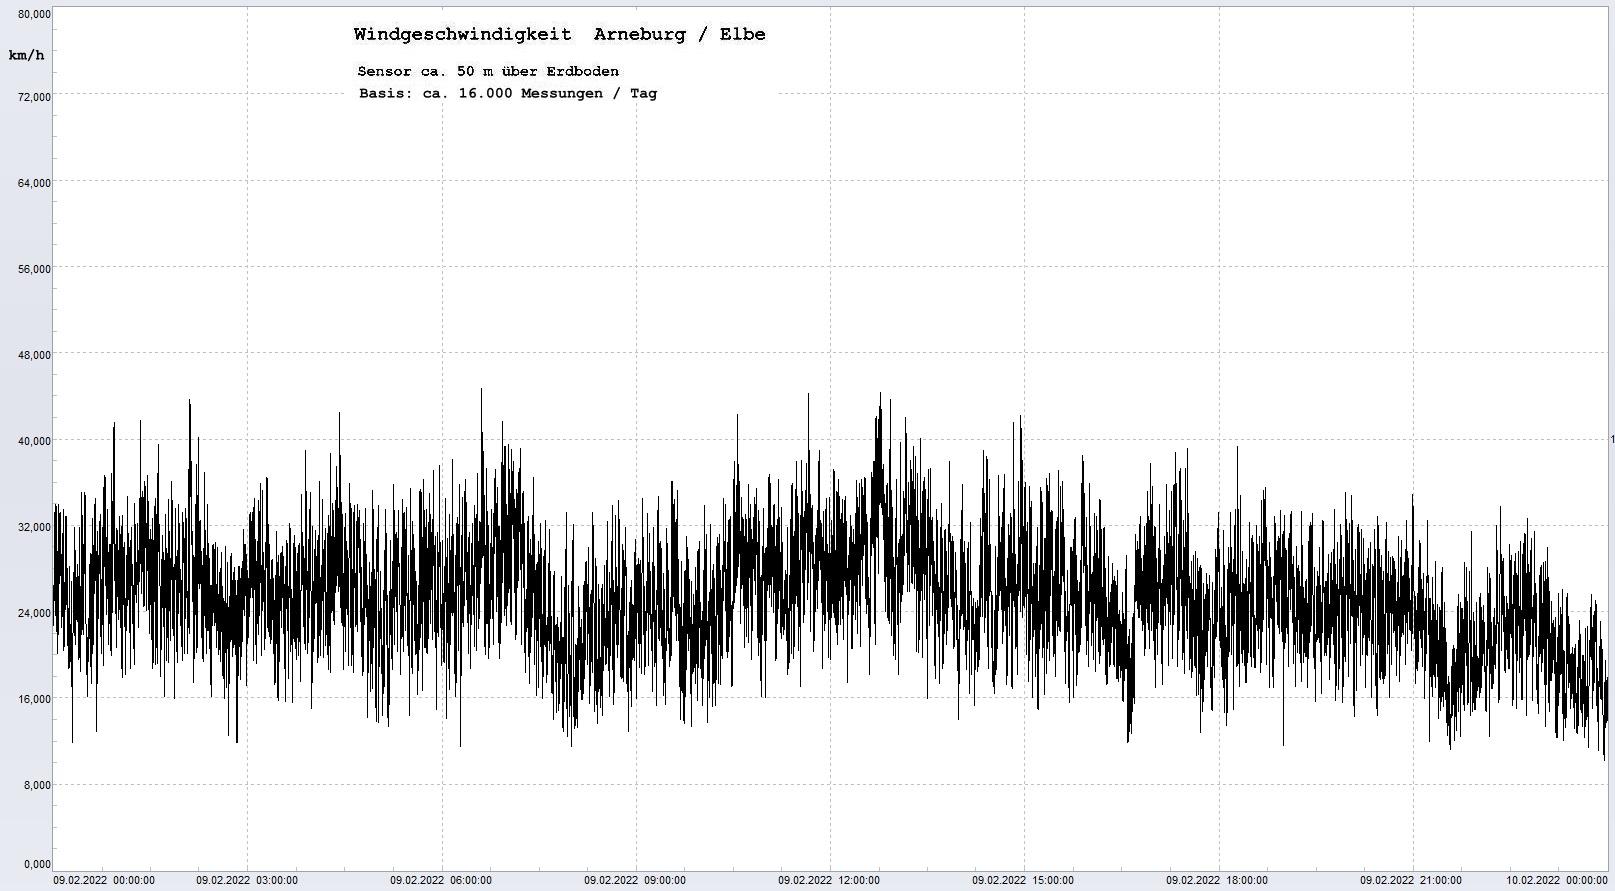 Arneburg Tages-Diagramm Winddaten, 09.02.2022
  Diagramm, Sensor auf Gebude, ca. 50 m ber Erdboden, Basis: 5s-Aufzeichnung